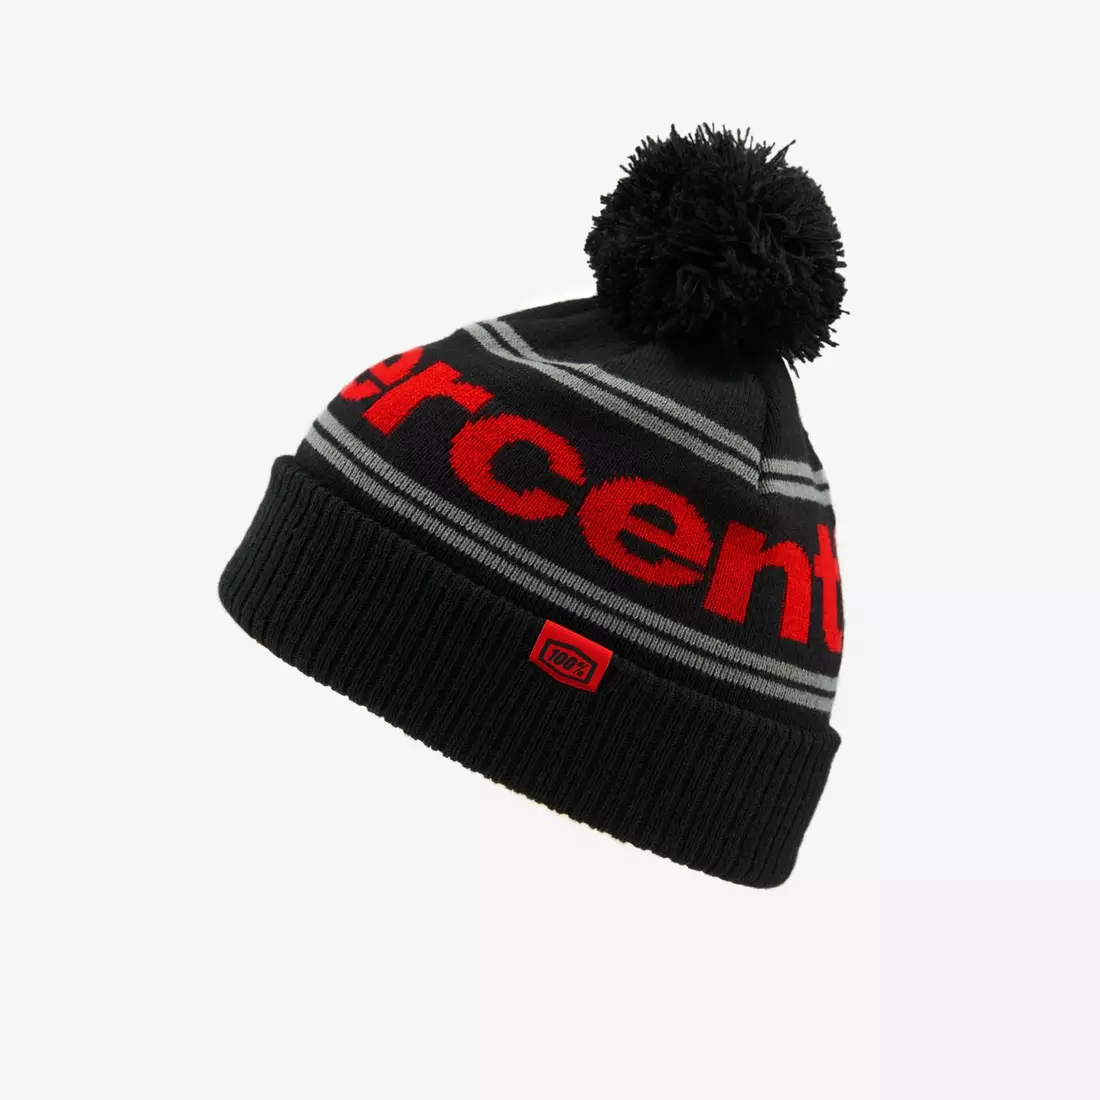 100% winter hat with a pompom RISE Cuff Beanie w/Pom Pom black-red STO-20122-013-01